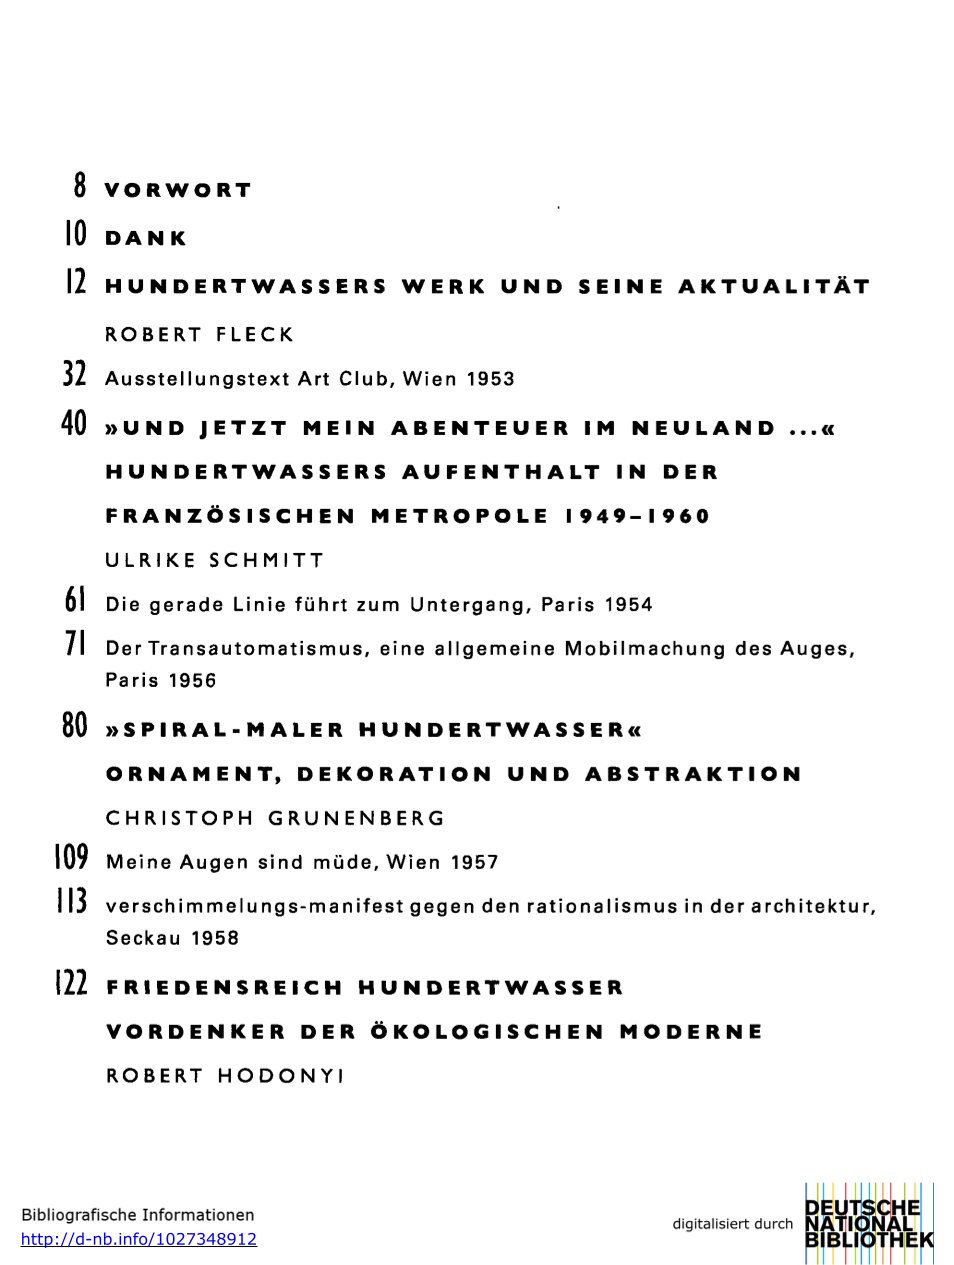 Friedensreich Hundertwasser | Gegen den Strich. Werke 1949-1970